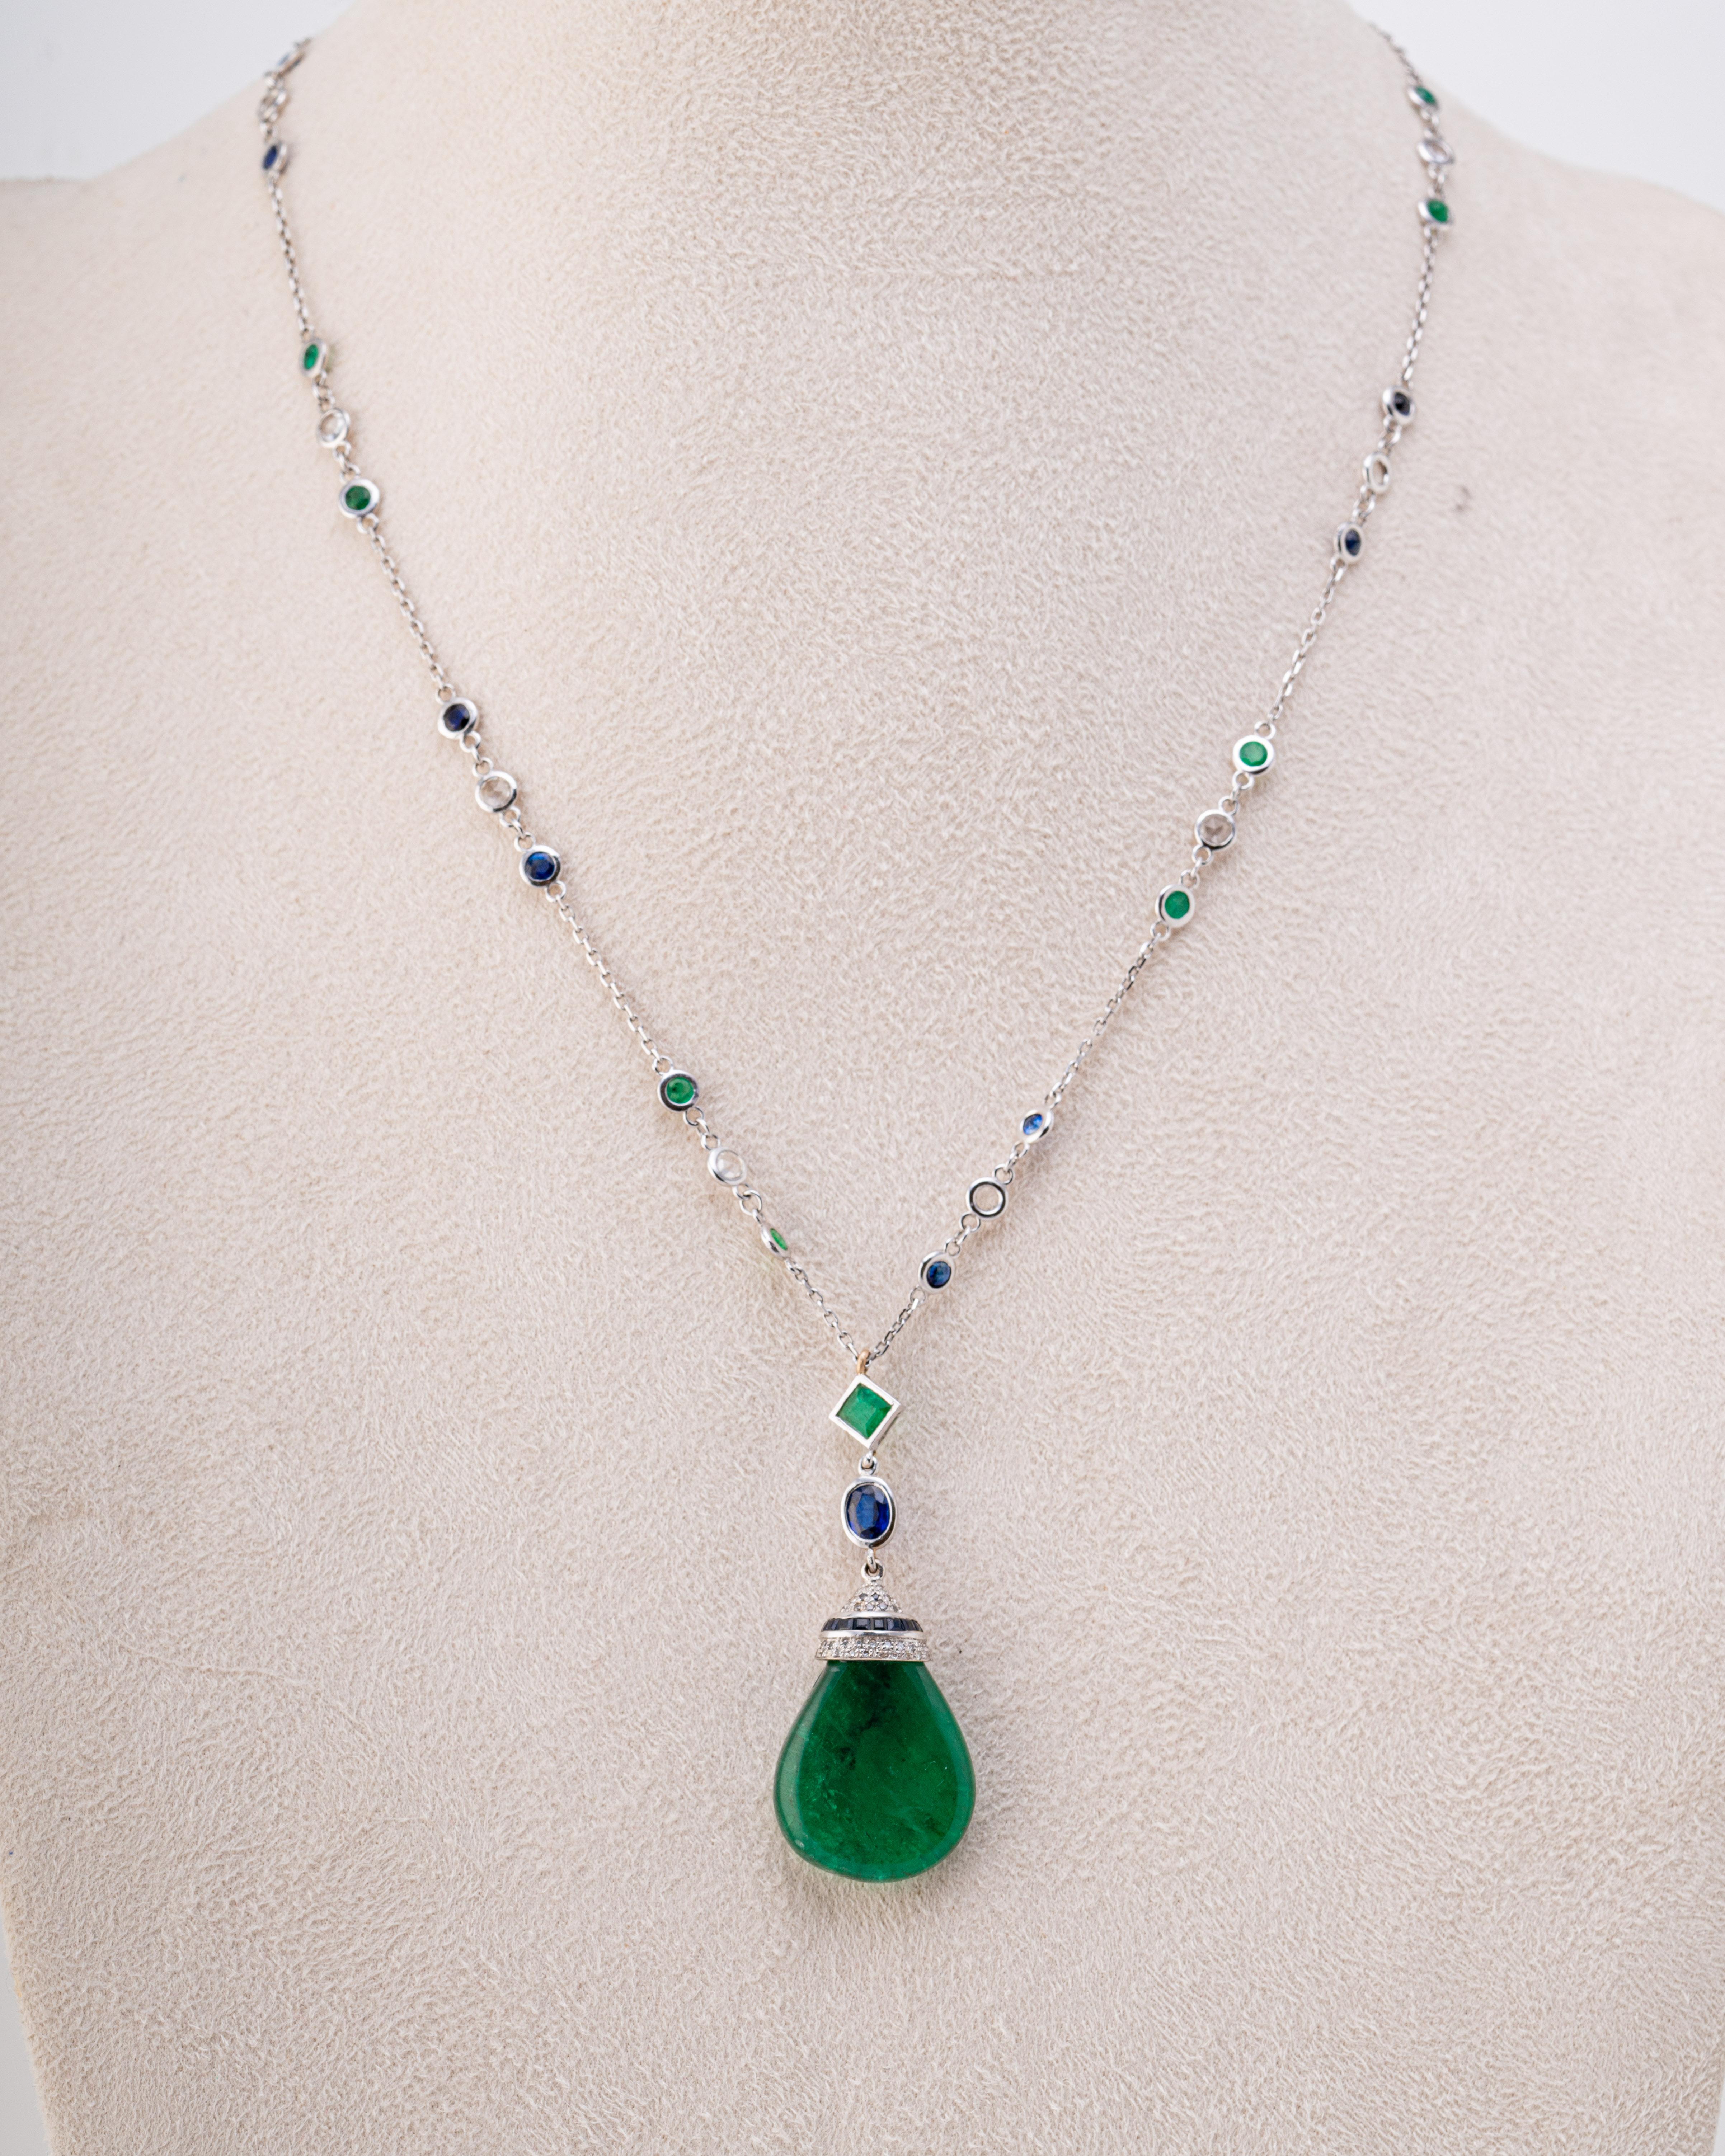 Pear Cut Certified 23.95 Carat Emerald Drop Pendant Necklace For Sale